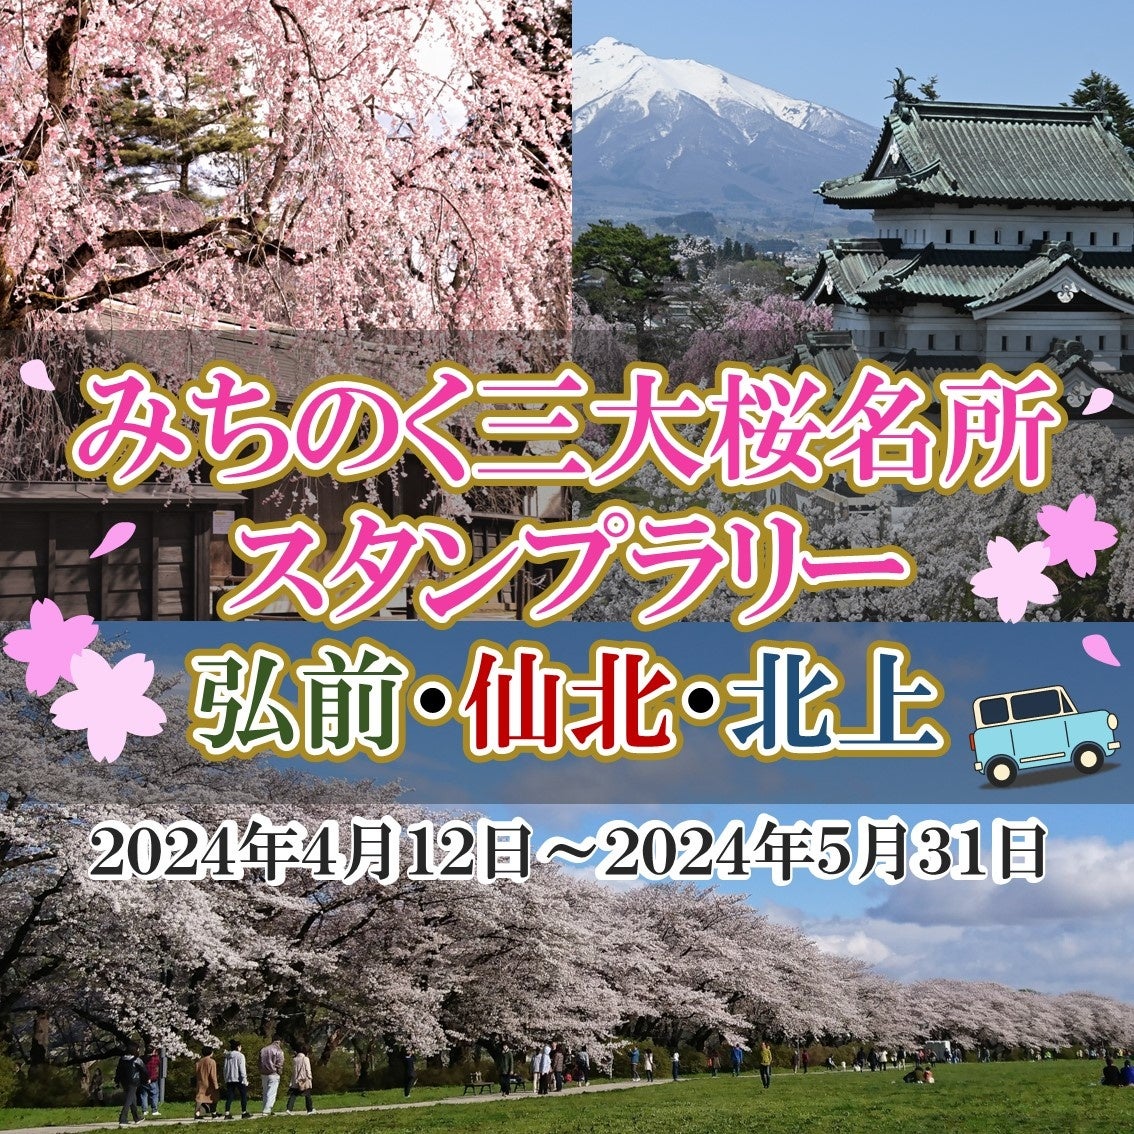 バラが咲き誇る横浜の街でGWを満喫する日本最大級の新たな園芸イベント「横浜フラワー＆ガーデンフェスティバル2024」初開催決定！